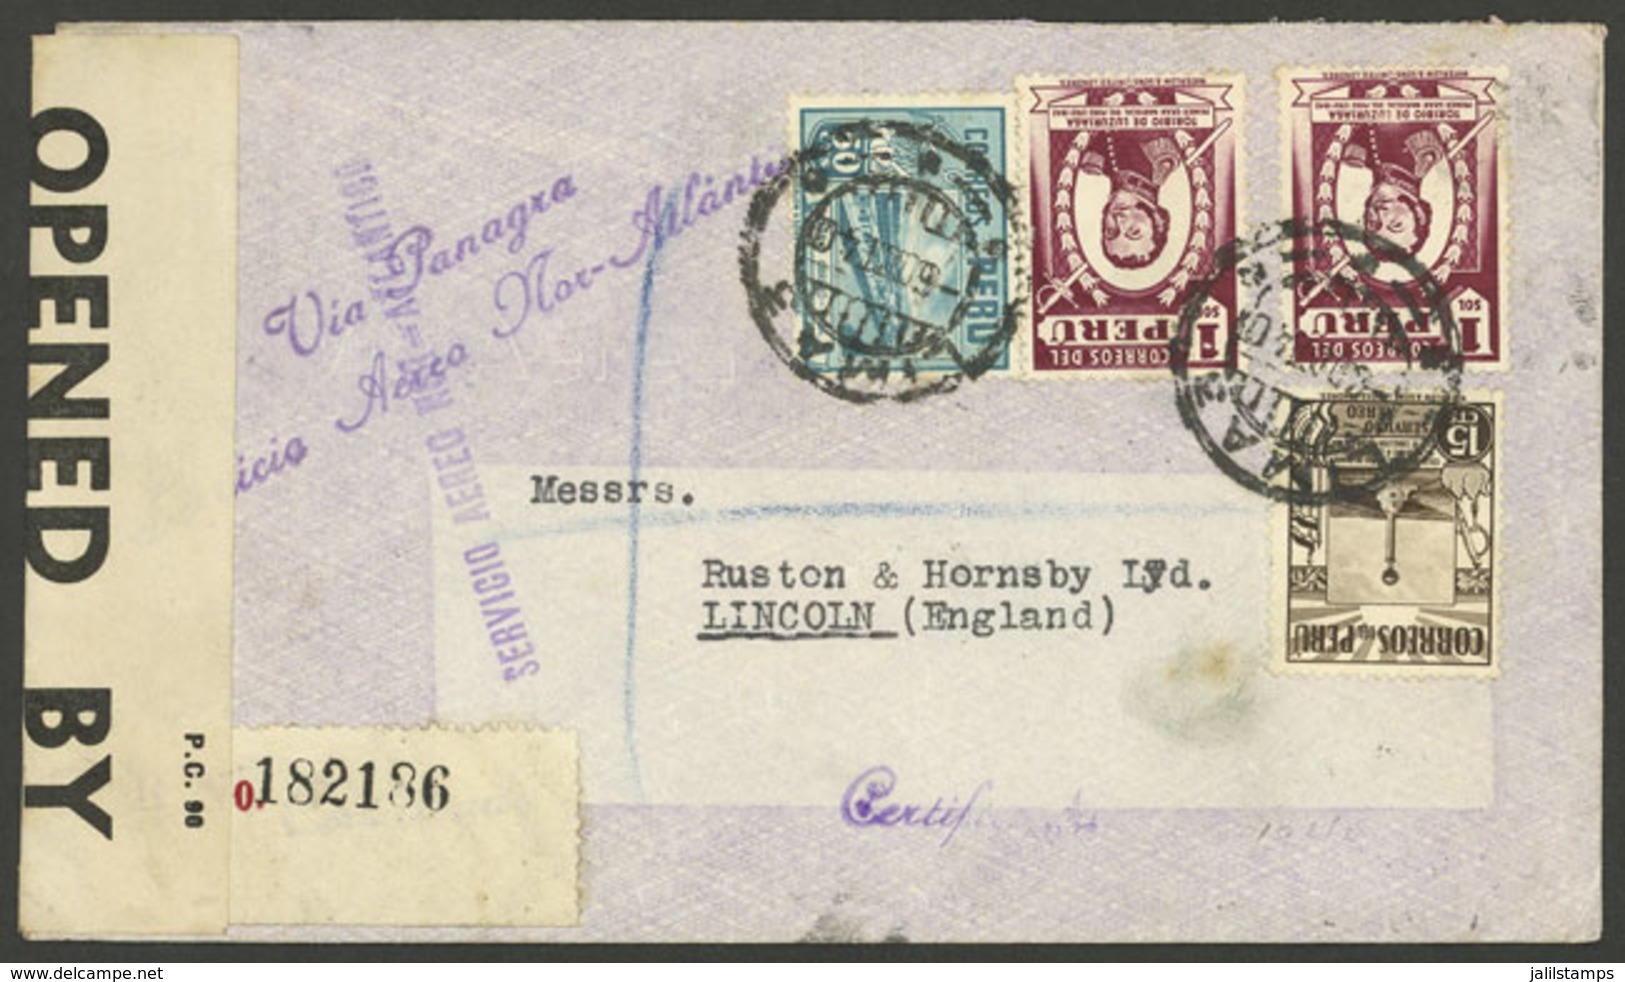 PERU: 6/OC/1940 Lima - England, Registered Airmail Cover With Violet Marks "SERVICIO AEREO NOR-ATLANTICO" Of PANAGRA, Br - Perú